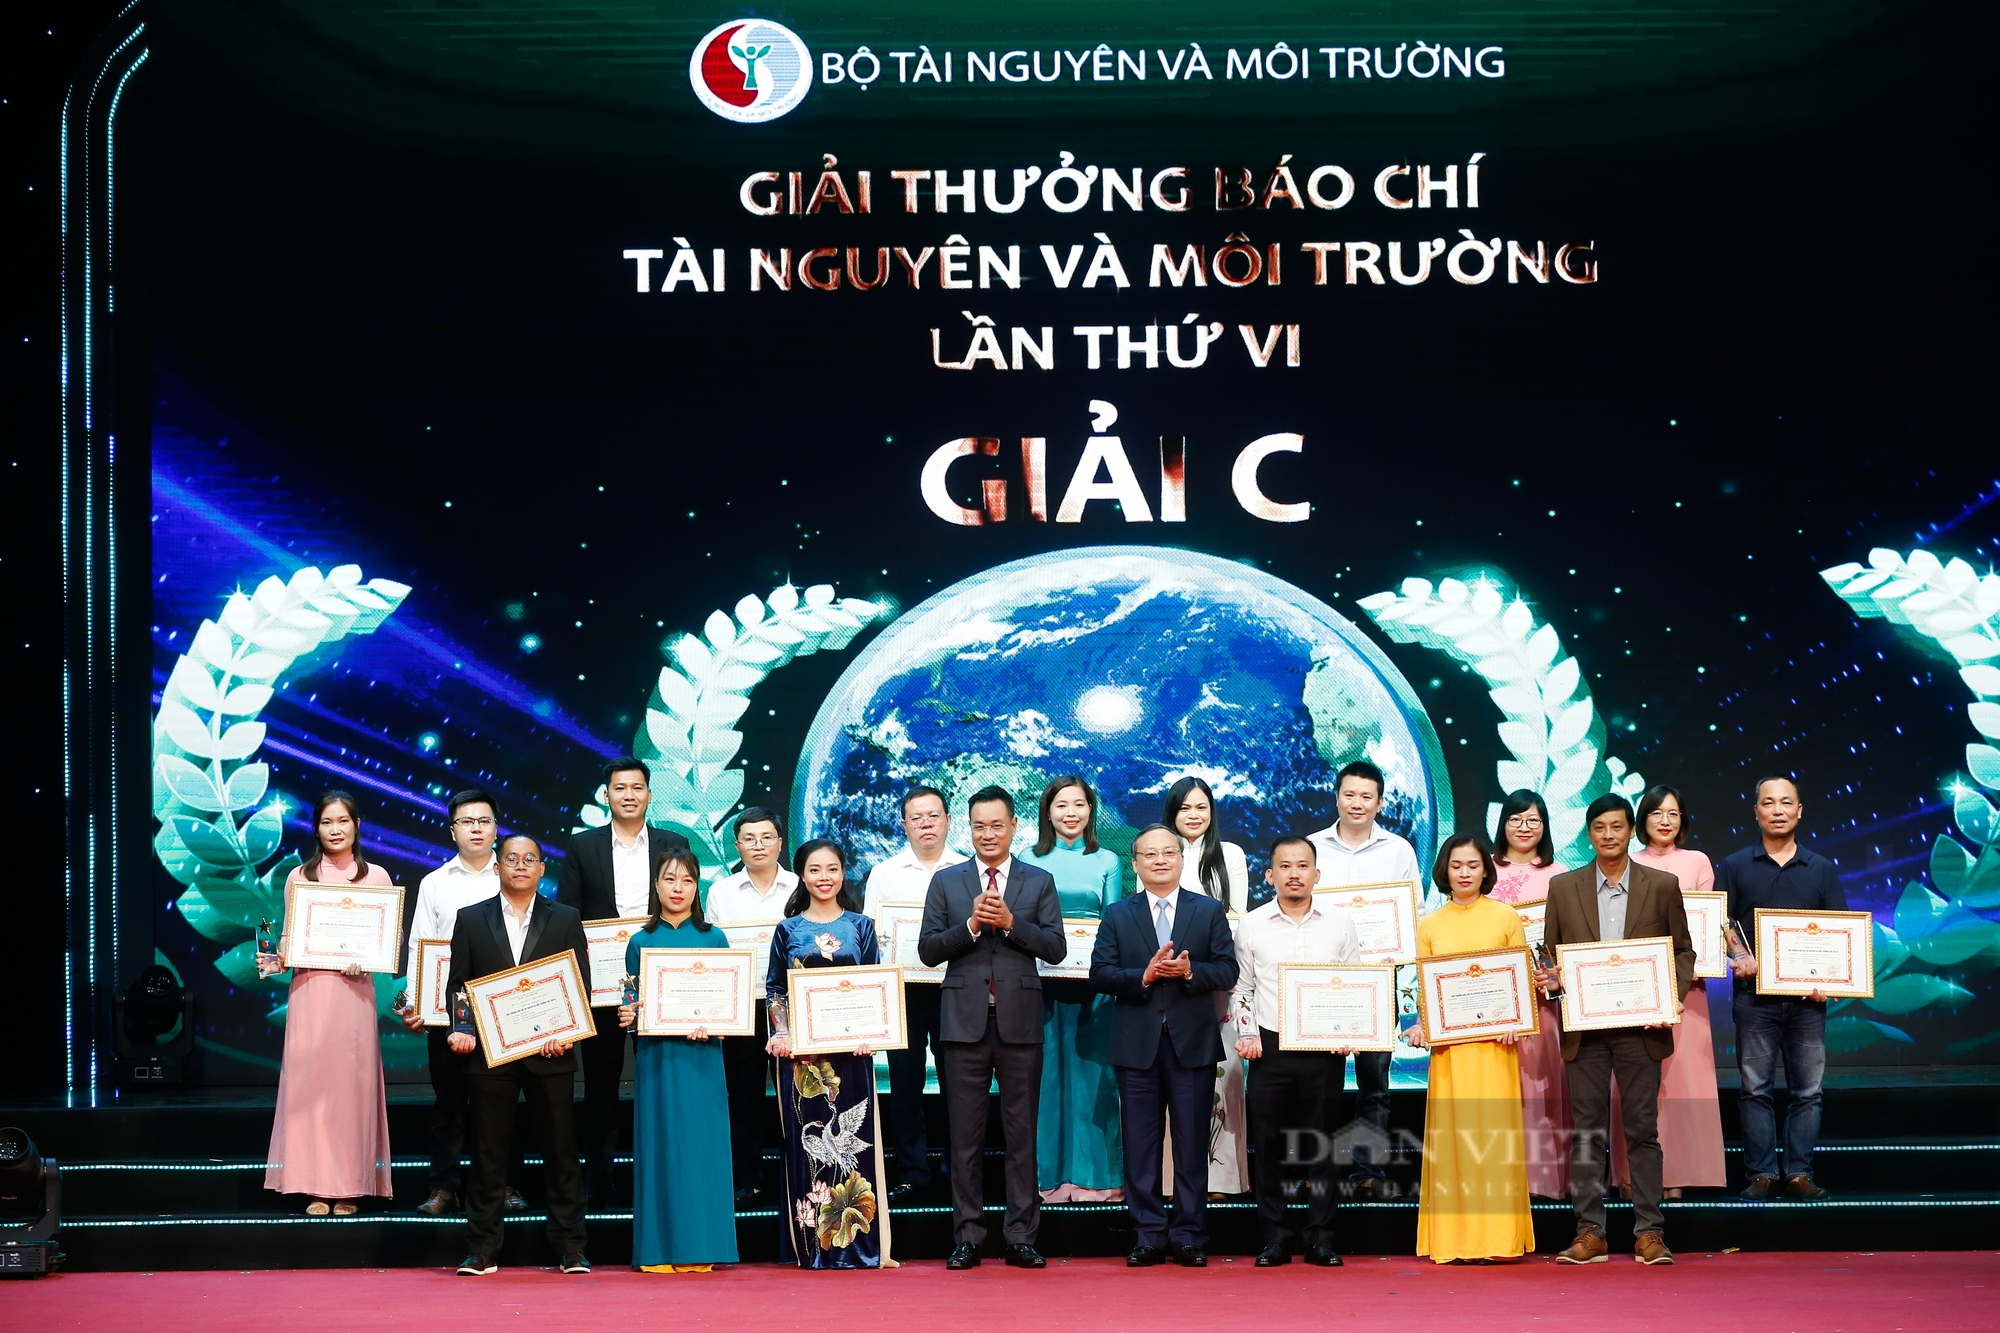 Báo NTNN/Dân Việt đoạt 1 Giải A, 1 Giải B tại Giải thưởng Báo chí Tài nguyên và Môi trường năm 2022 - Ảnh 4.